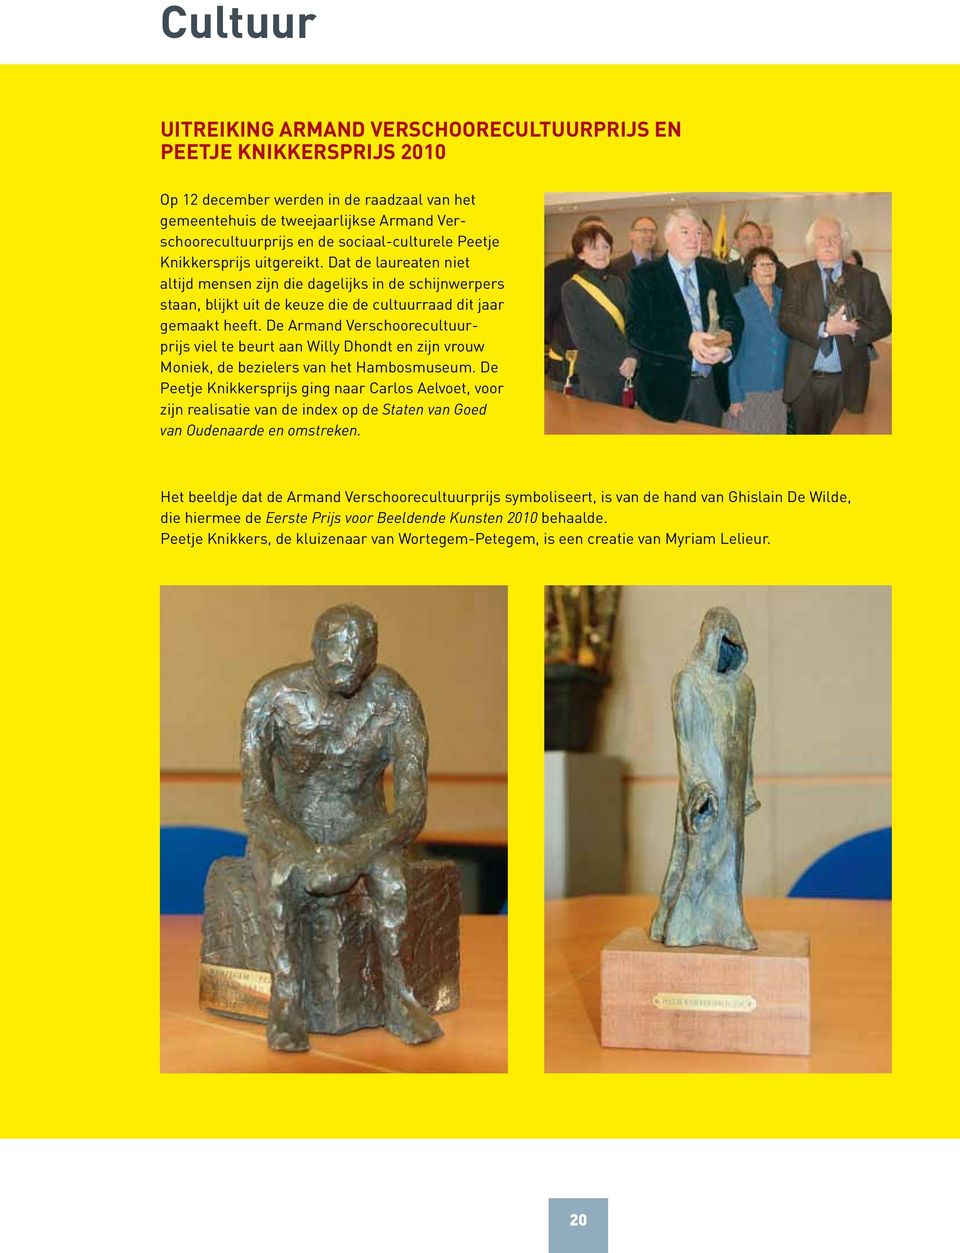 De Armand Verschoorecultuurprijs viel te beurt aan Willy Dhondt en zijn vrouw Moniek, de bezielers van het Hambosmuseum.